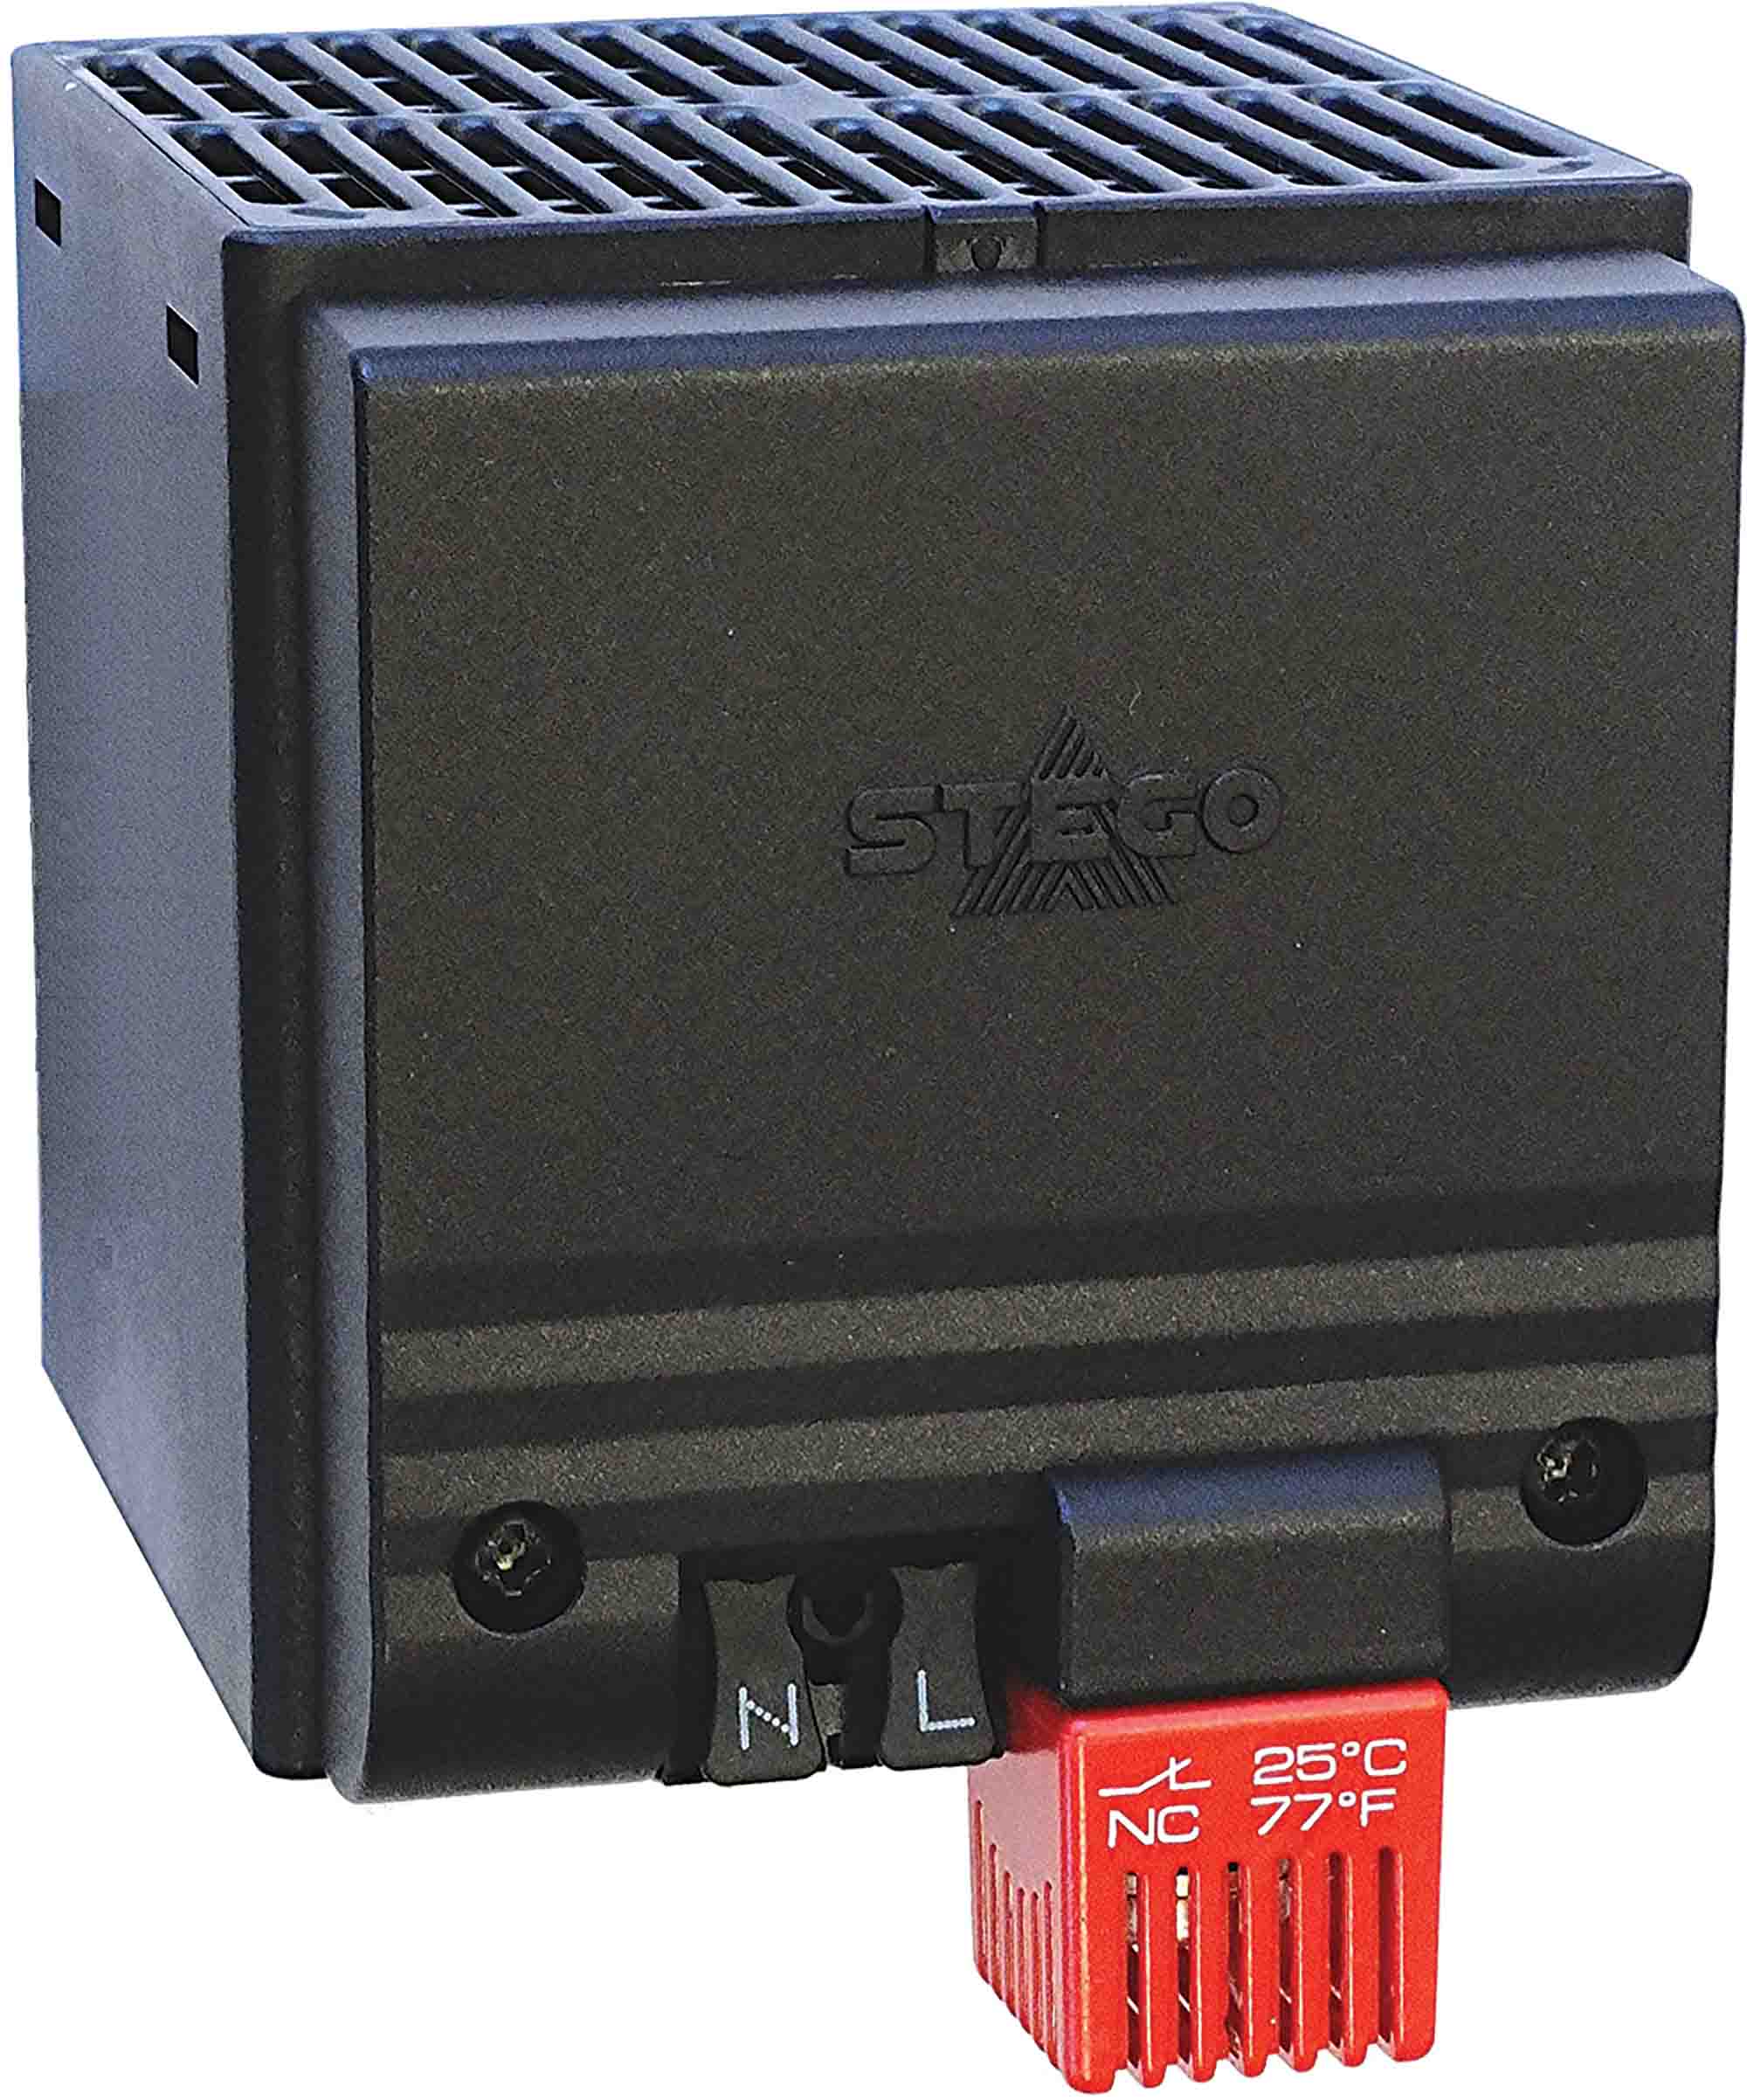 STEGO Enclosure Heater, 230V ac, 250W Output, 50°C, 105mm x 85mm x 118mm